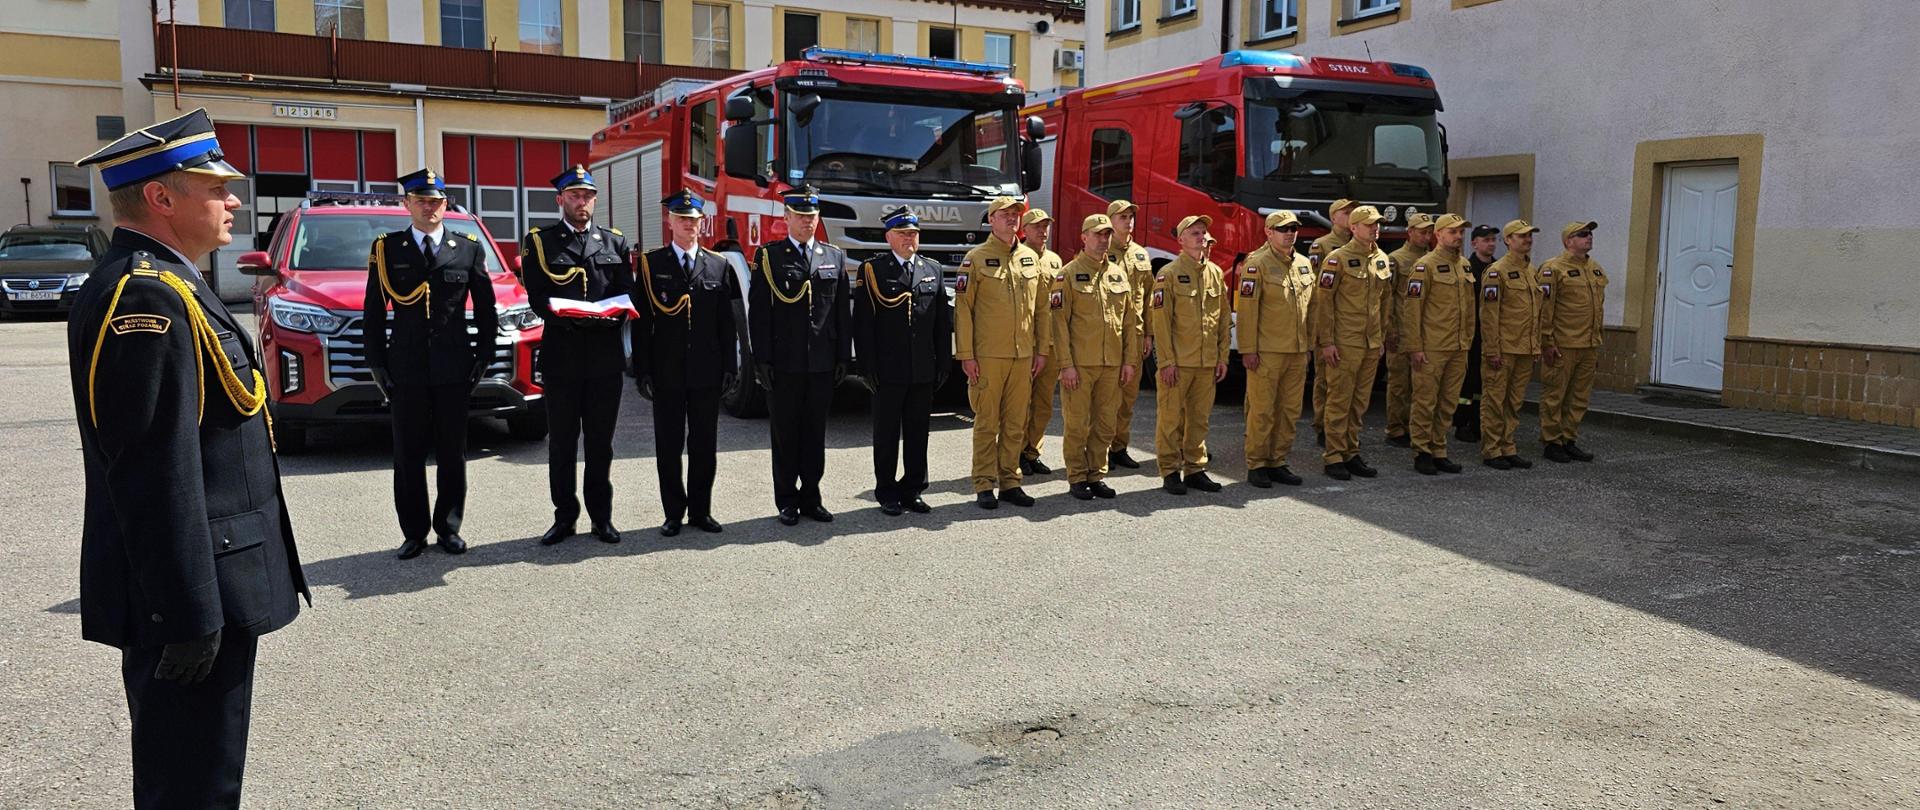 Zbiórka strażaków w piaskowych i czarnych mundurach na tle czerwonych pojazdów pożarniczych.